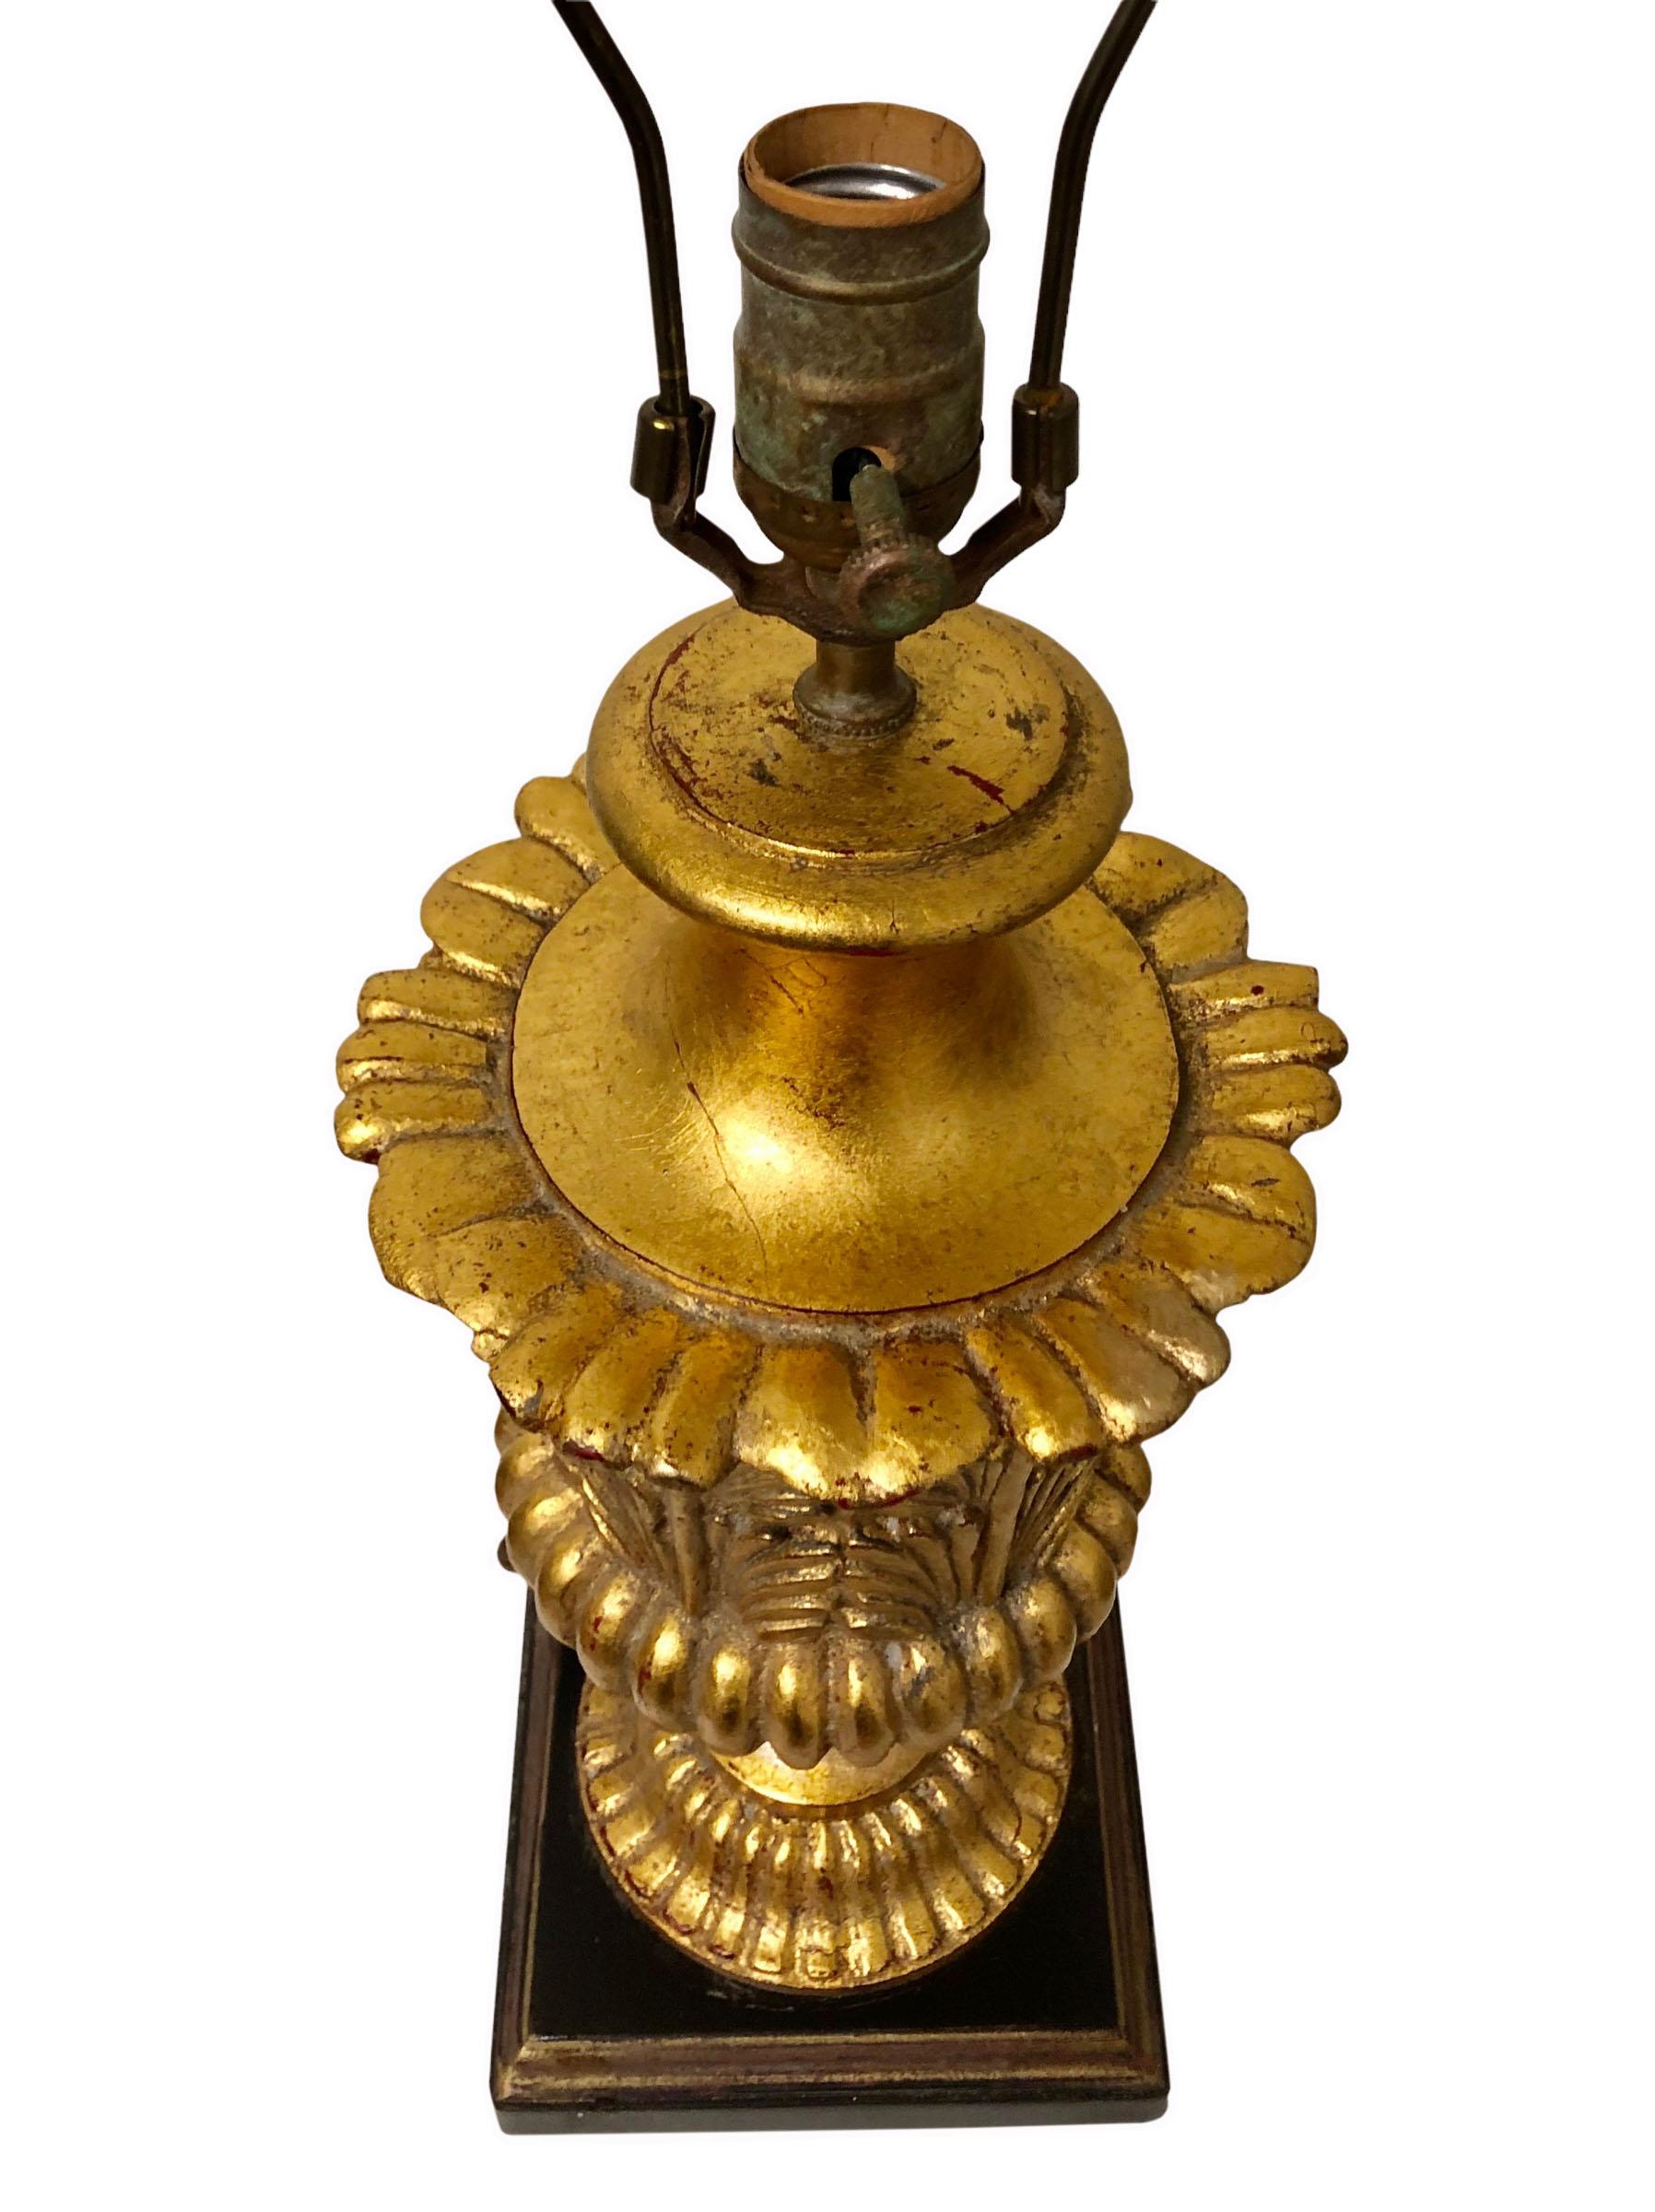 Une seule lampe en or doré dans le style empire. Elle est très joliment dorée et le nom de la société figure en bas. La lampe a les fiches, la douille et la harpe d'origine et fonctionne très bien. Vers les années 1940. 